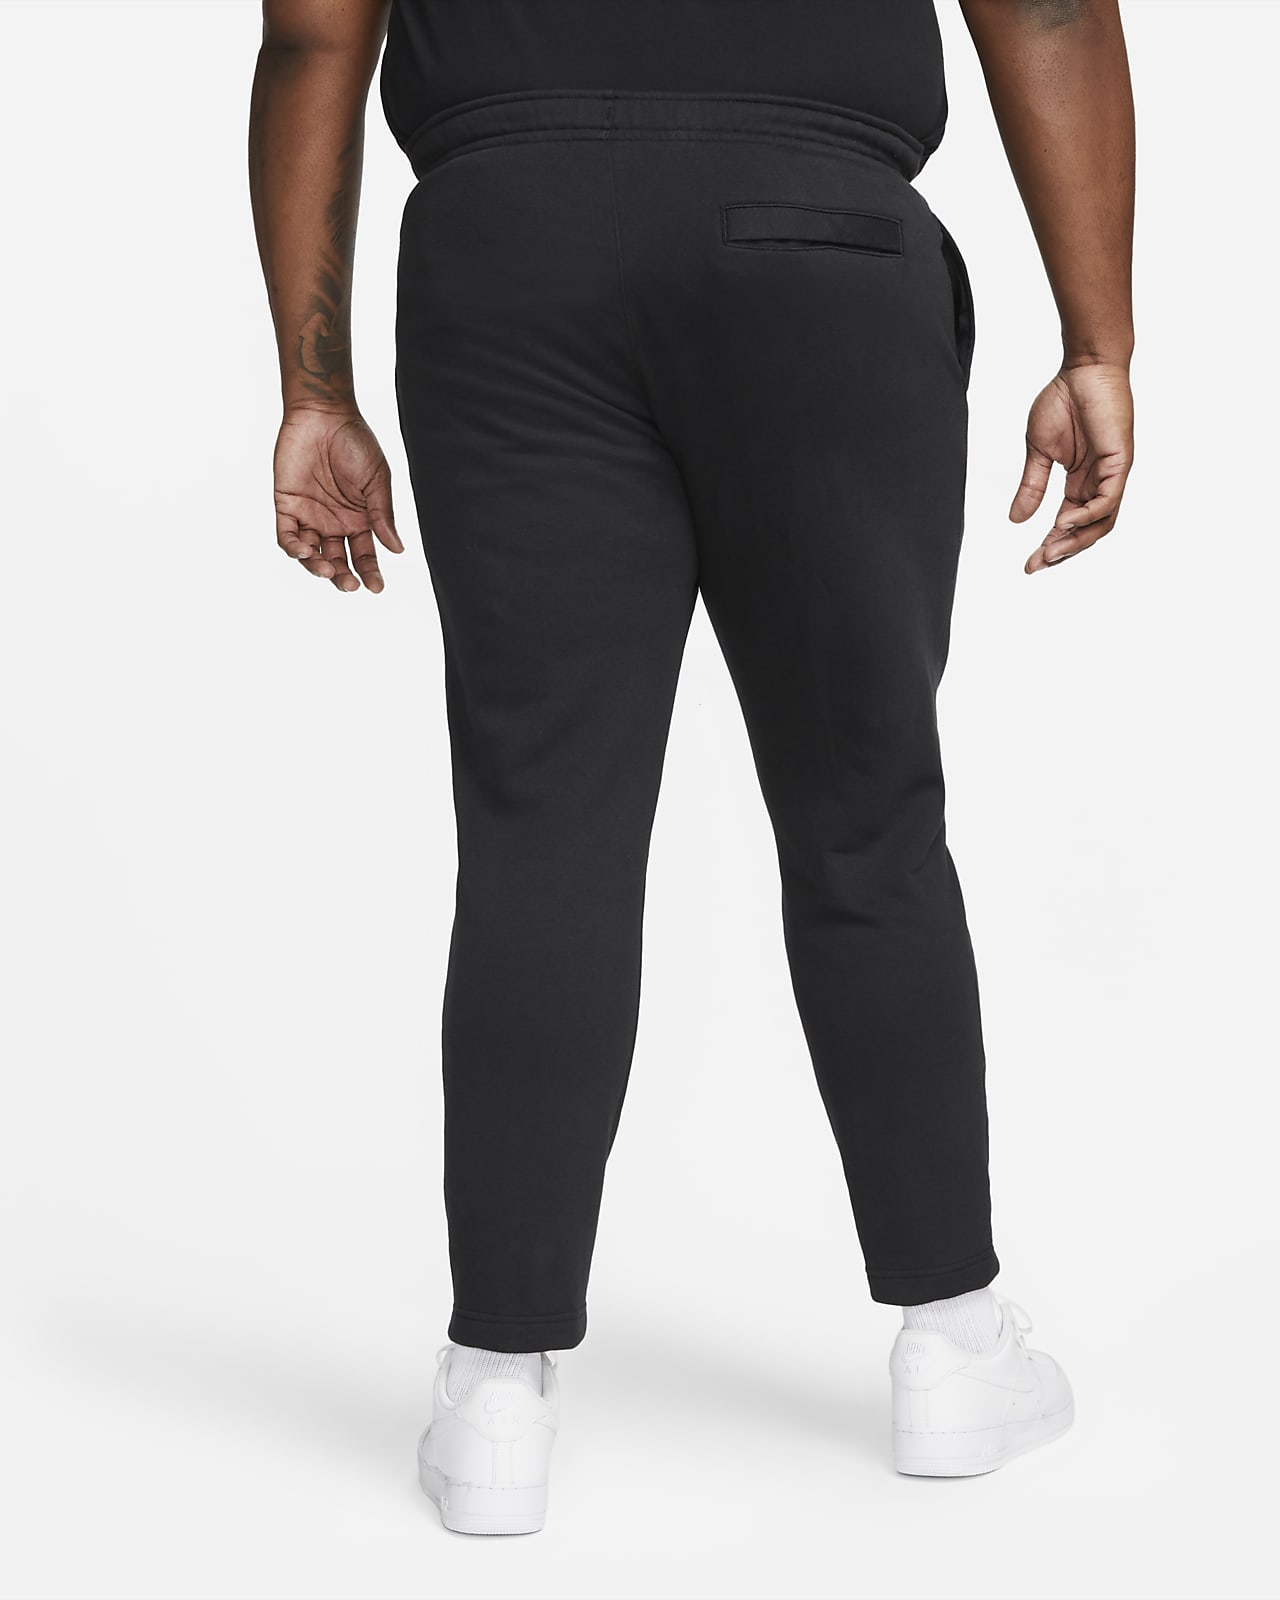 Nike Sportswear Tech Fleece Joggers Black/Dark Grey Heather/White Men's - US